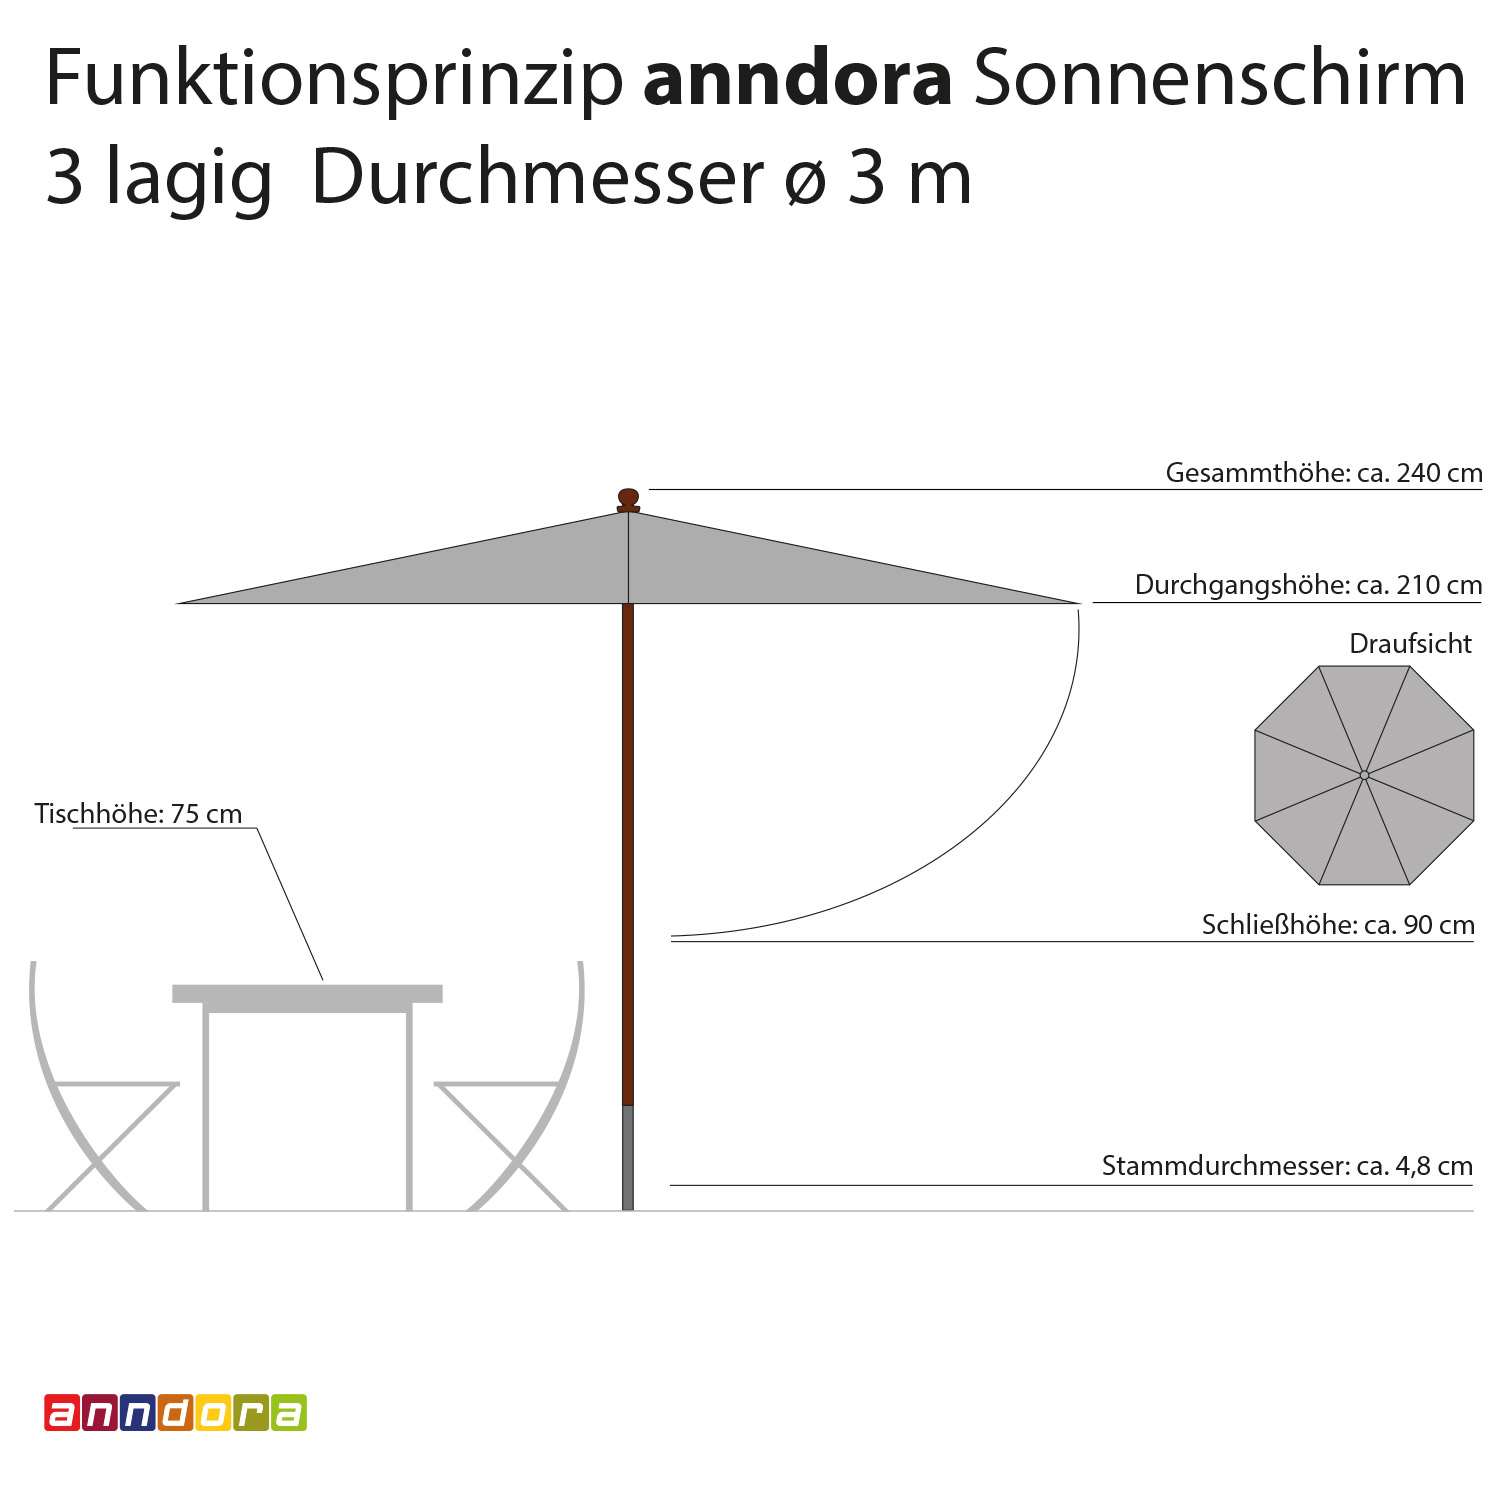 anndora Sonnenschirm 3m rund 3-lagig Navy Dunkelblau UV-Schutz - 3